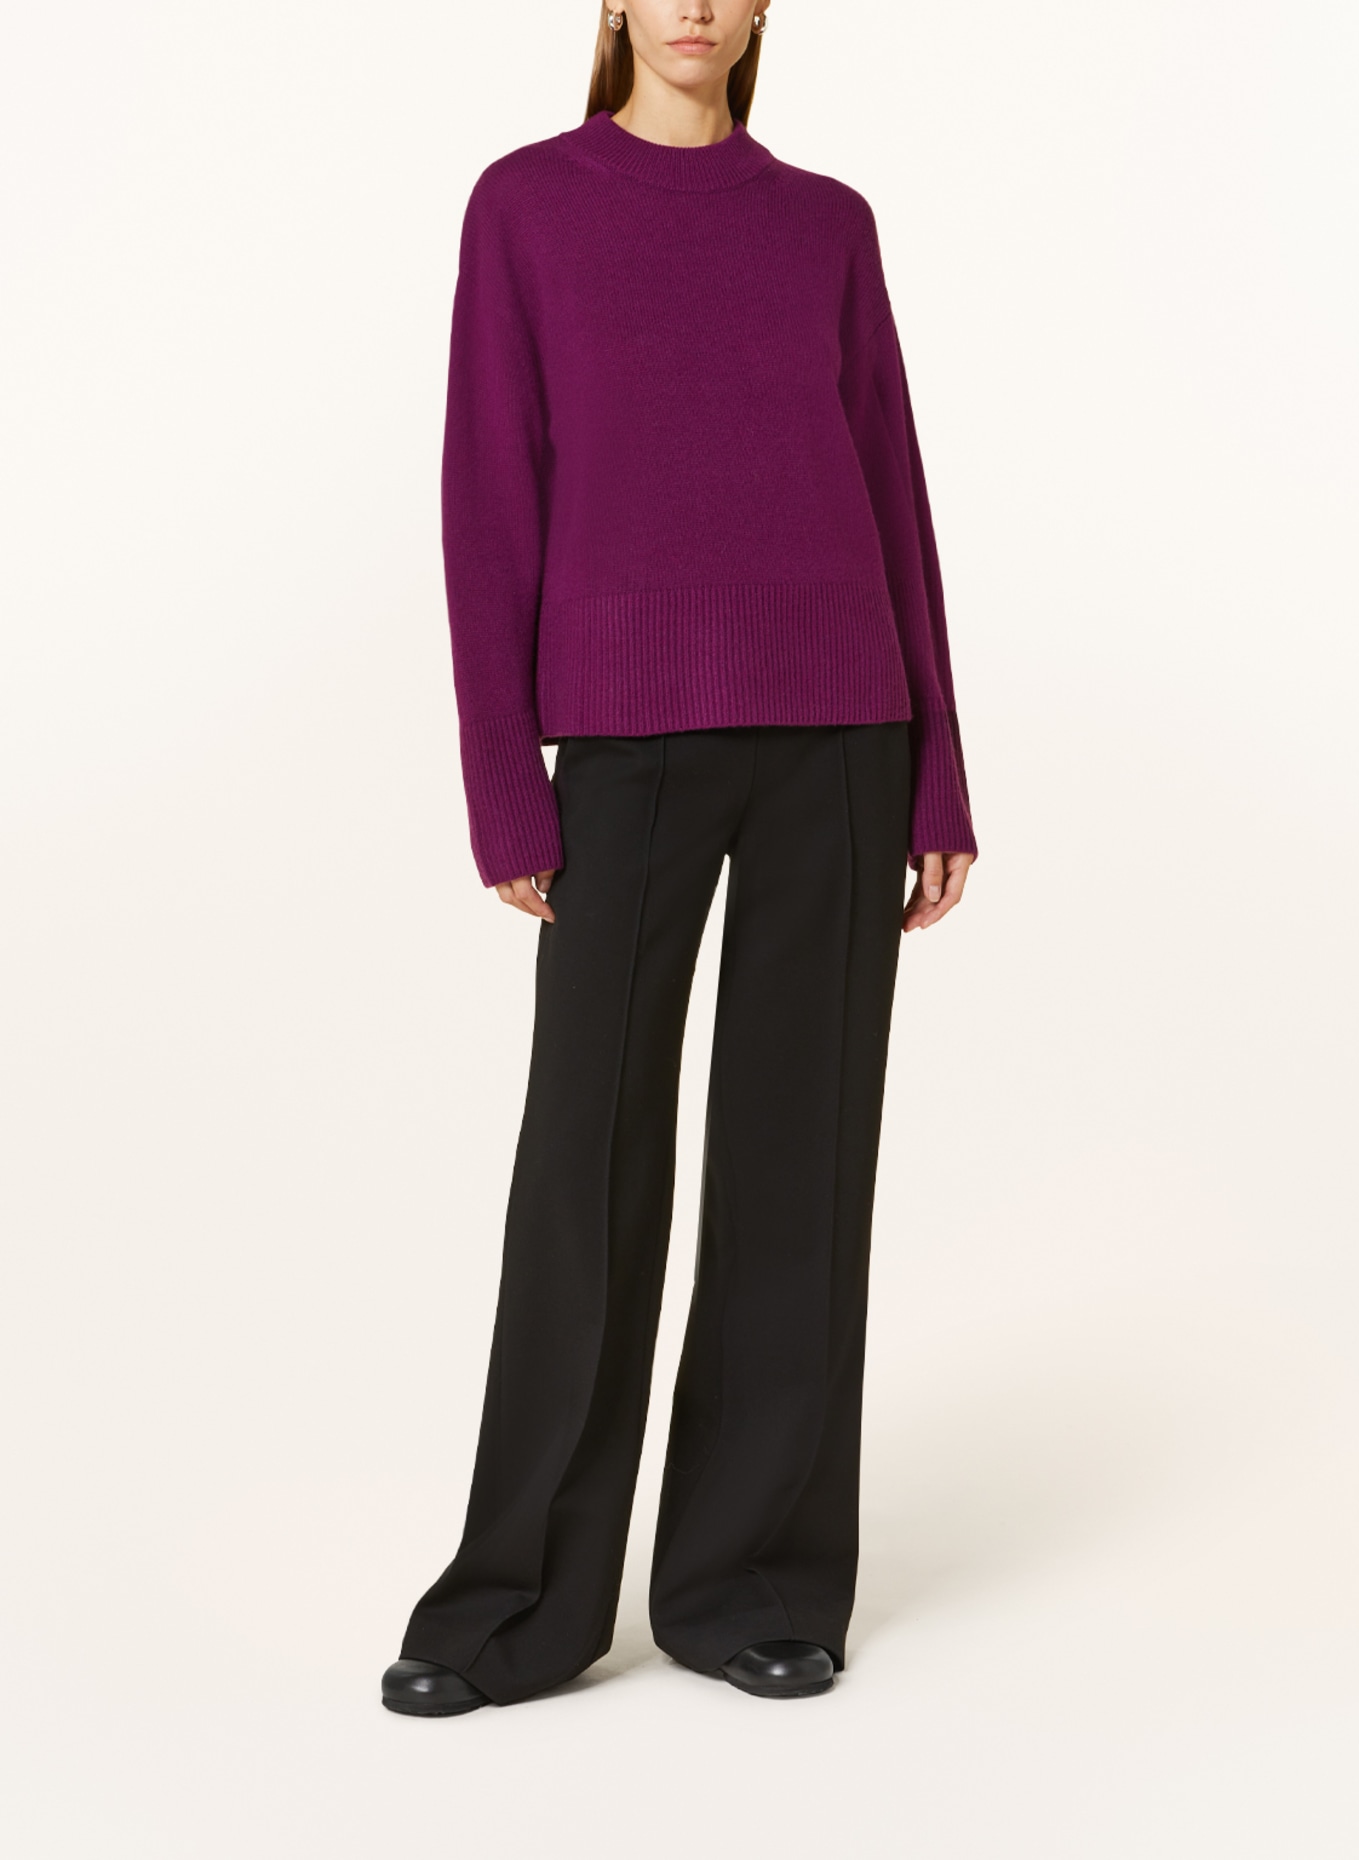 MRS & HUGS Cashmere sweater, Color: DARK PURPLE (Image 2)